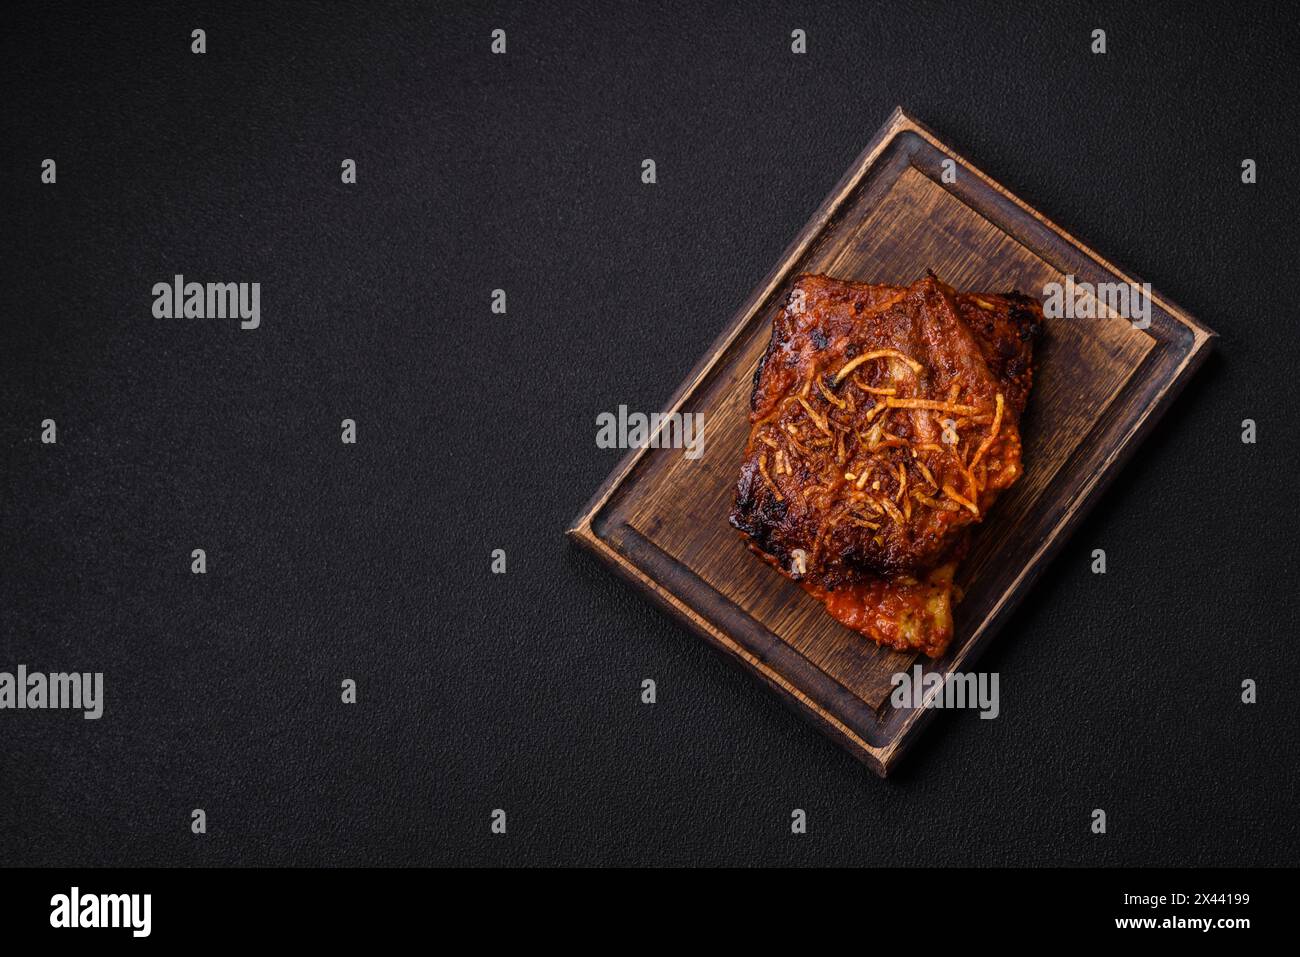 Délicieuses côtes de porc ou de bœuf cuites sur le gril avec du sel, des épices et des herbes sur un fond de béton foncé Banque D'Images